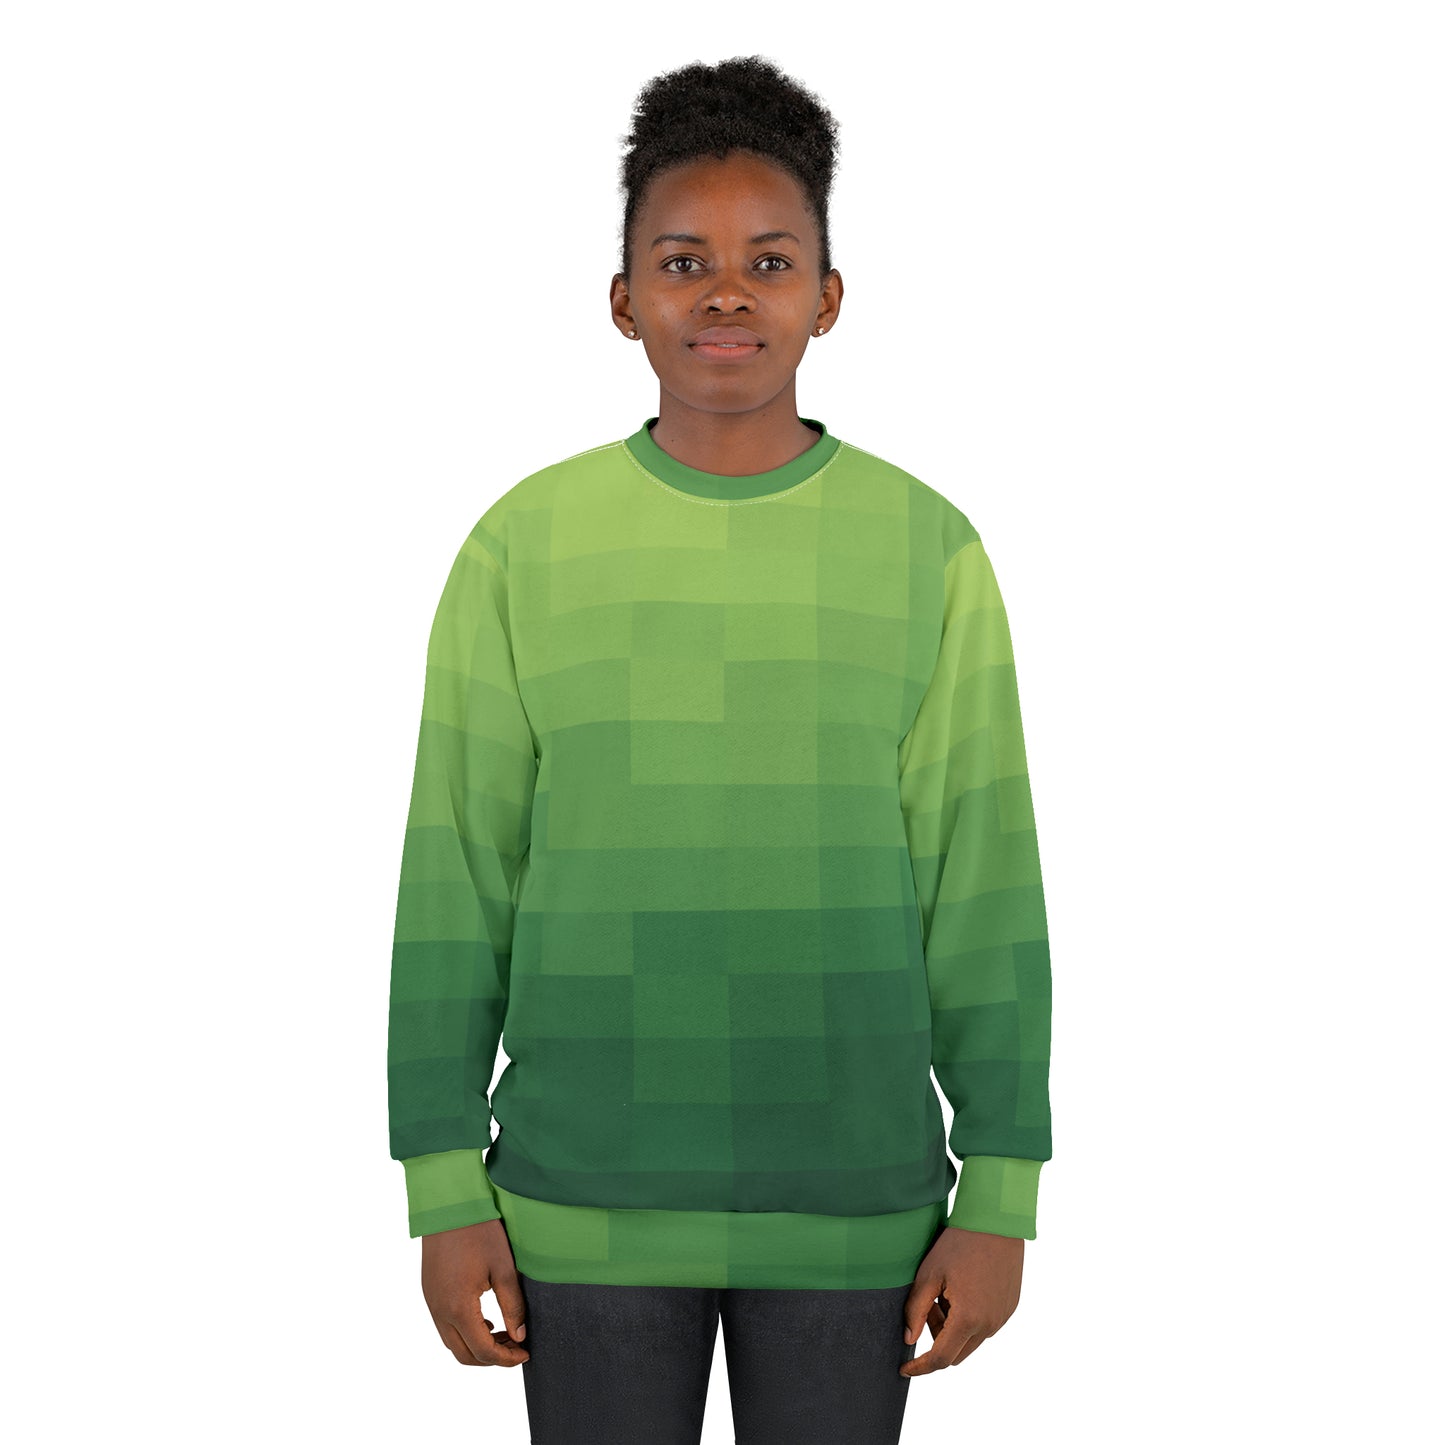 8-bit Green Sweatshirt